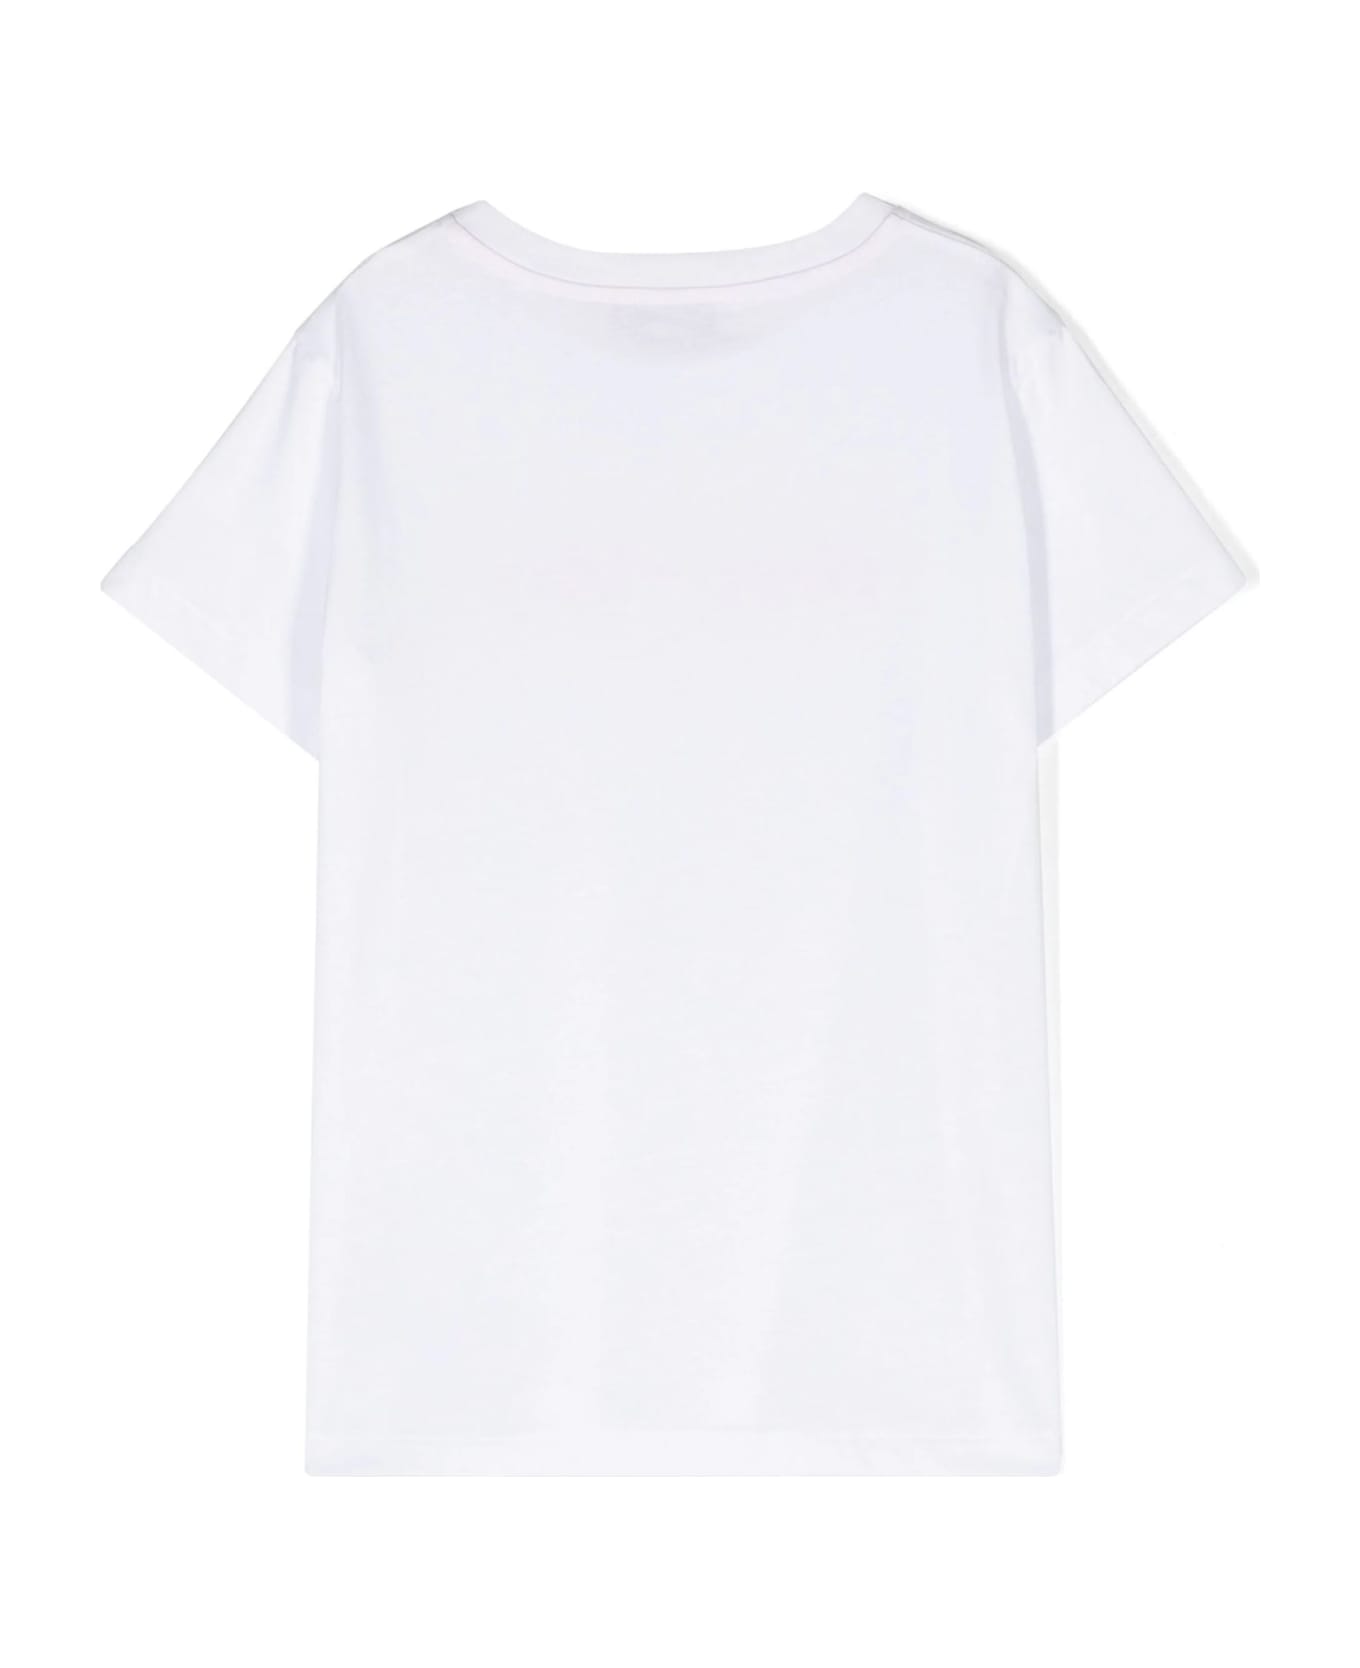 Missoni Kids Missoni T-shirts And Polos White - White